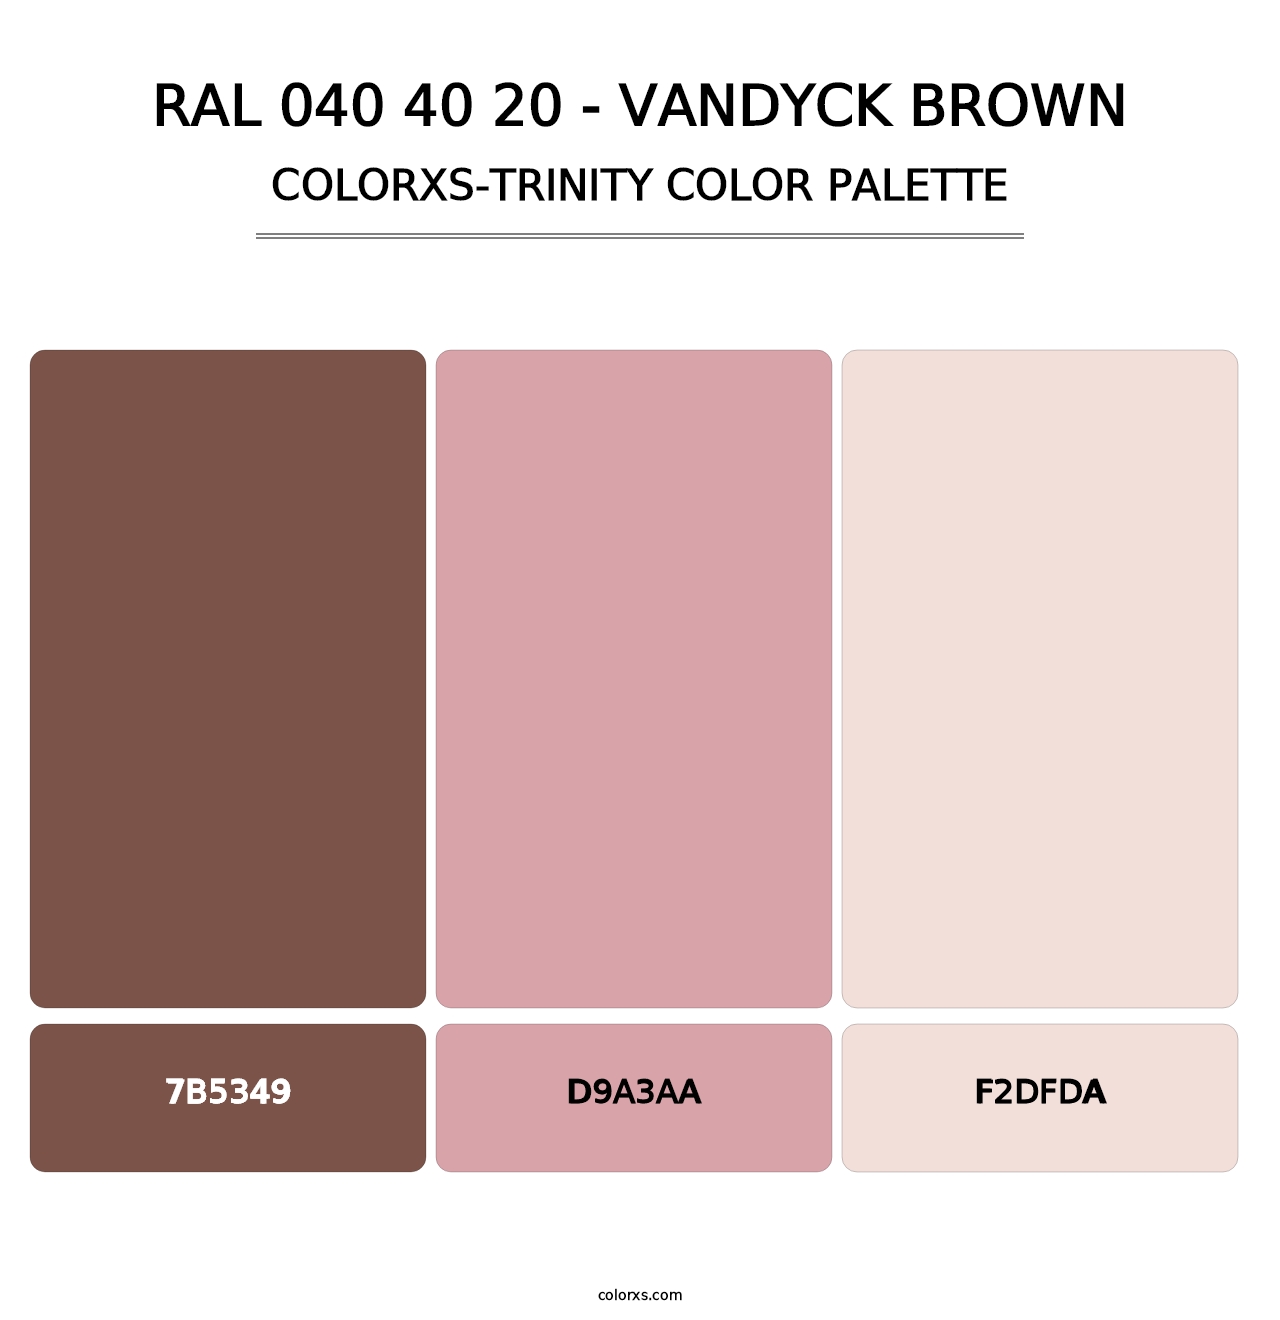 RAL 040 40 20 - Vandyck Brown - Colorxs Trinity Palette